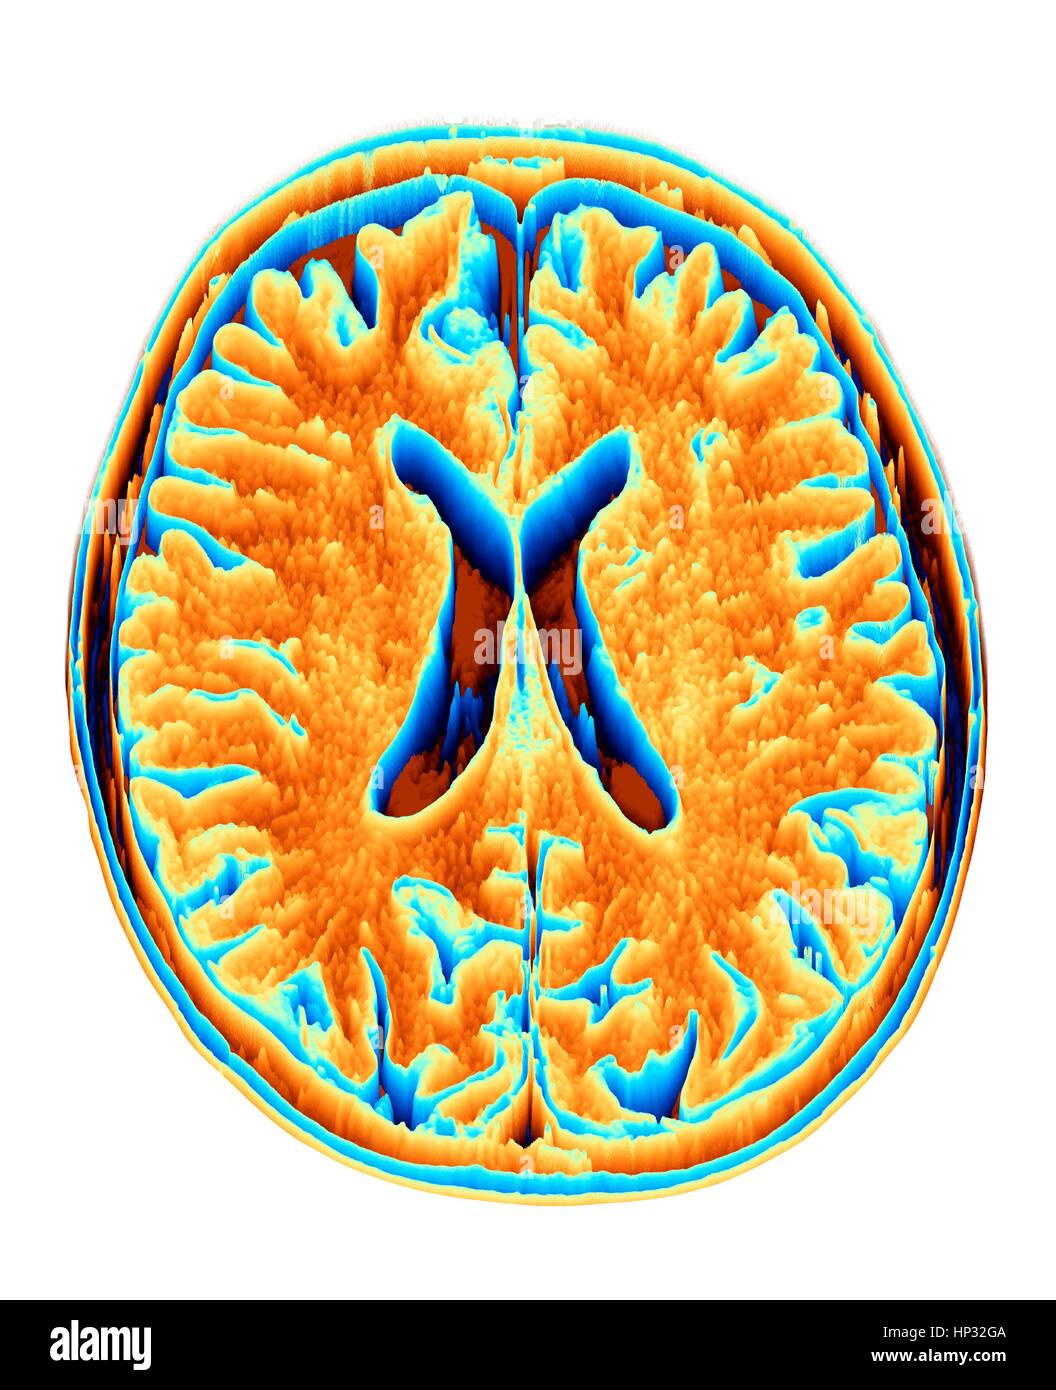 Normale Gehirn. Farbige Magnetresonanz-Bildgebung (MRI) Scan von einem axialen Schnitt durch ein gesundes Gehirn in ein Feld Heightmap oder Höhe umgewandelt. Die Abbildungen zeigen den Kortex und seitlichen Ventrikel (X-Form in der Mitte). Stockfoto